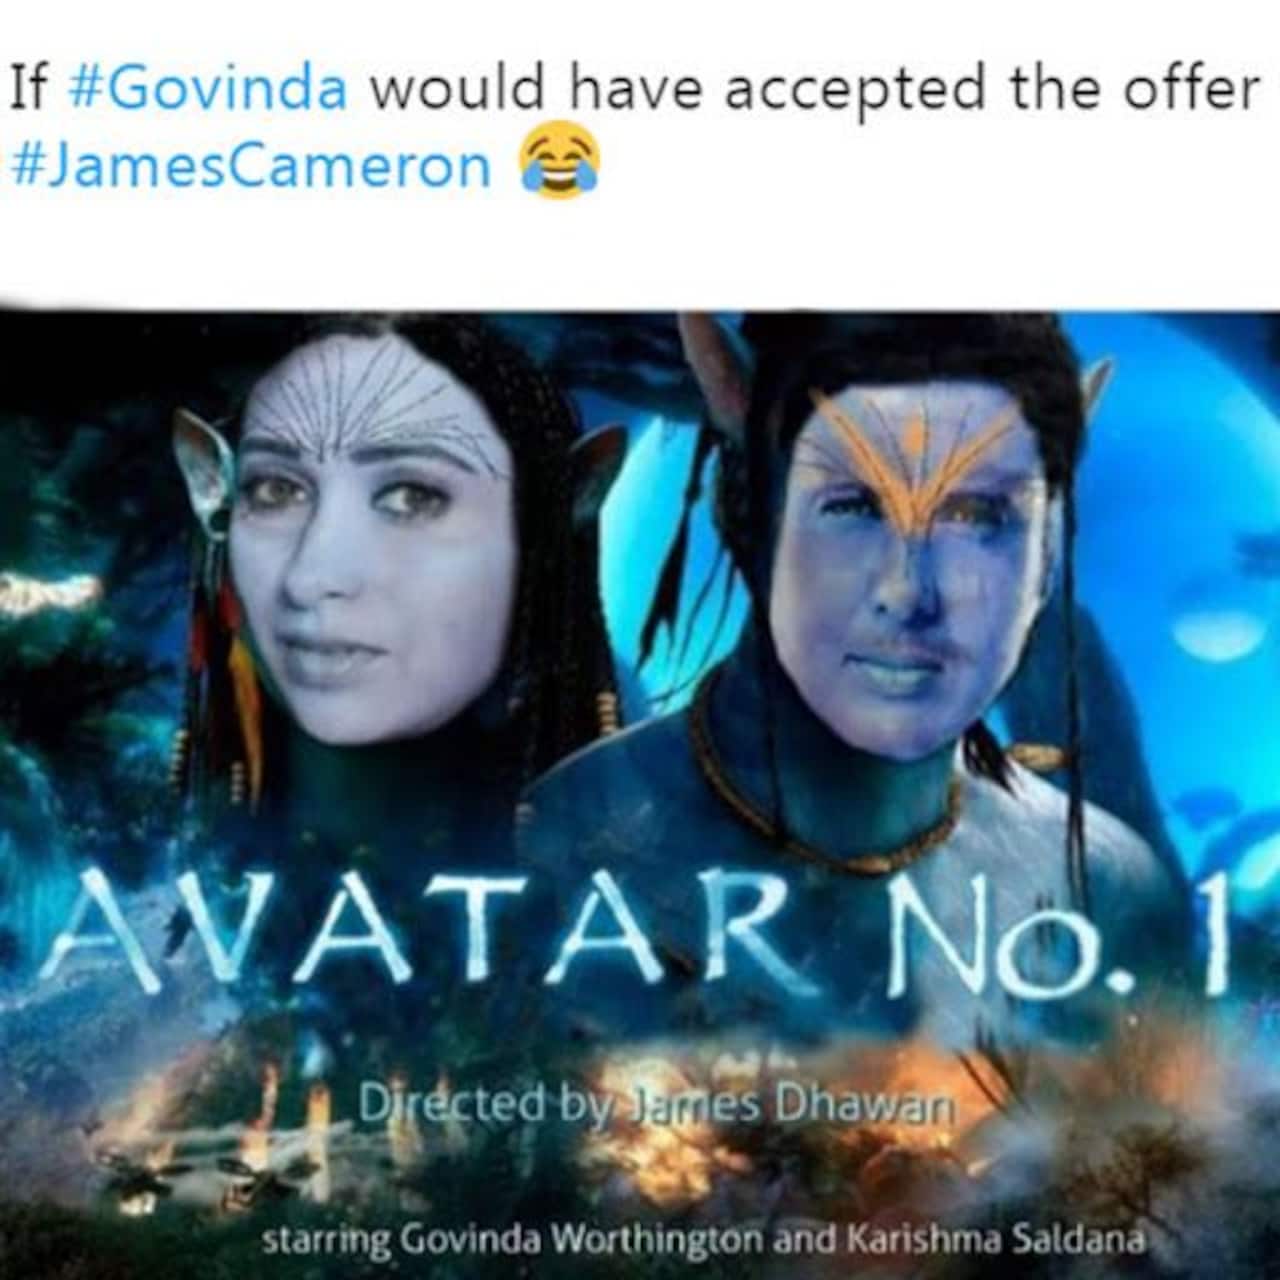 Govinda x Avatar meme: Khi thế giới Bollywood kết hợp với Avatar, bạn sẽ có được một bộ sưu tập hình ảnh meme cực kỳ thú vị. Sự kết hợp này sẽ đem lại cho bạn những phút giây thư giãn vô cùng, hãy xem ngay những hình ảnh meme độc nhất này để tận hưởng những tiếng cười tươi tắn này.